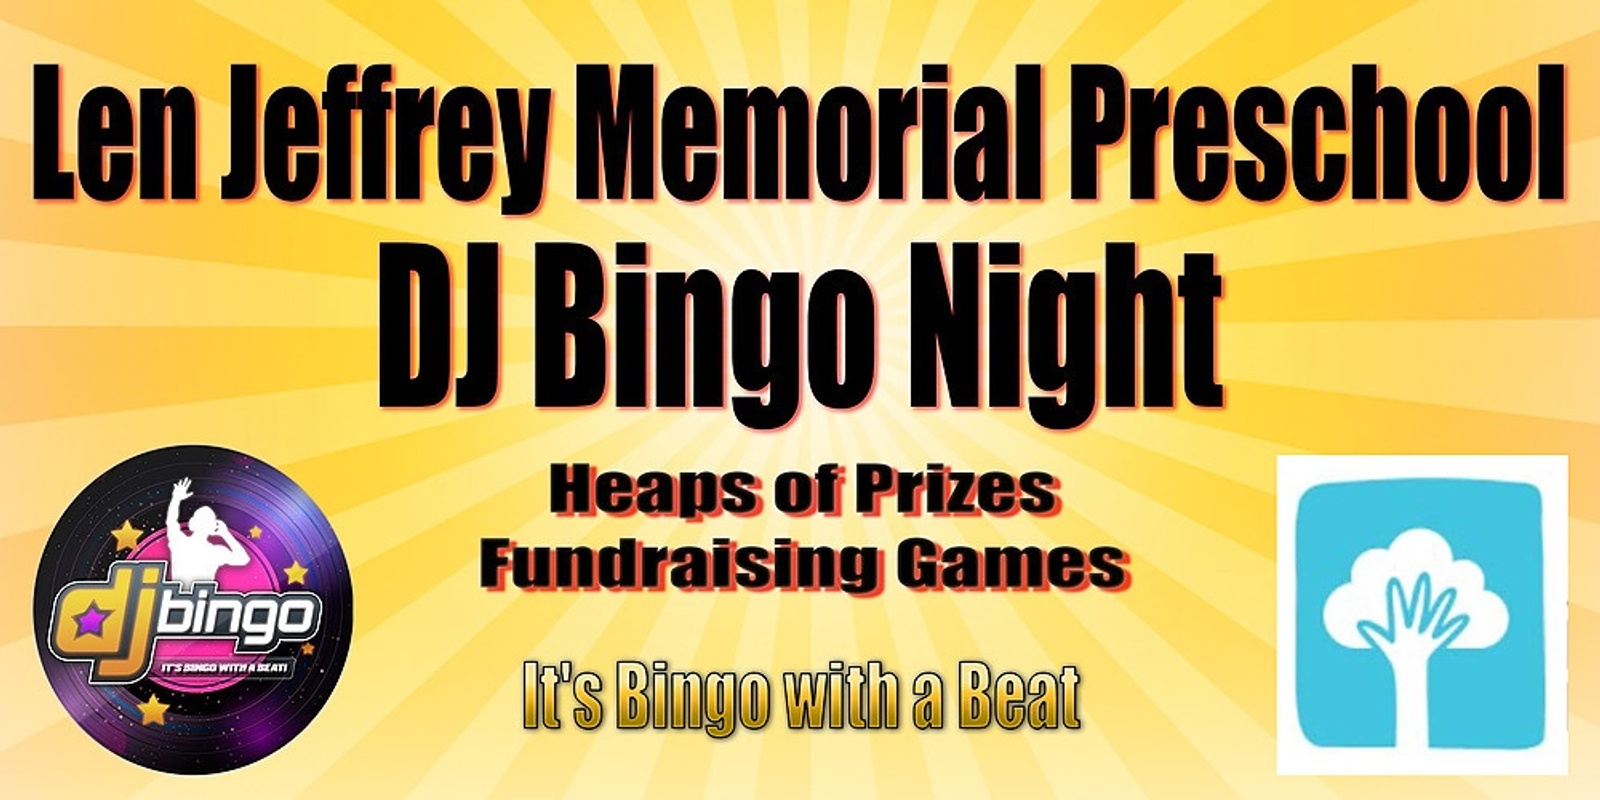 Banner image for Len Jeffrey Memorial Preschool DJ Bingo Night